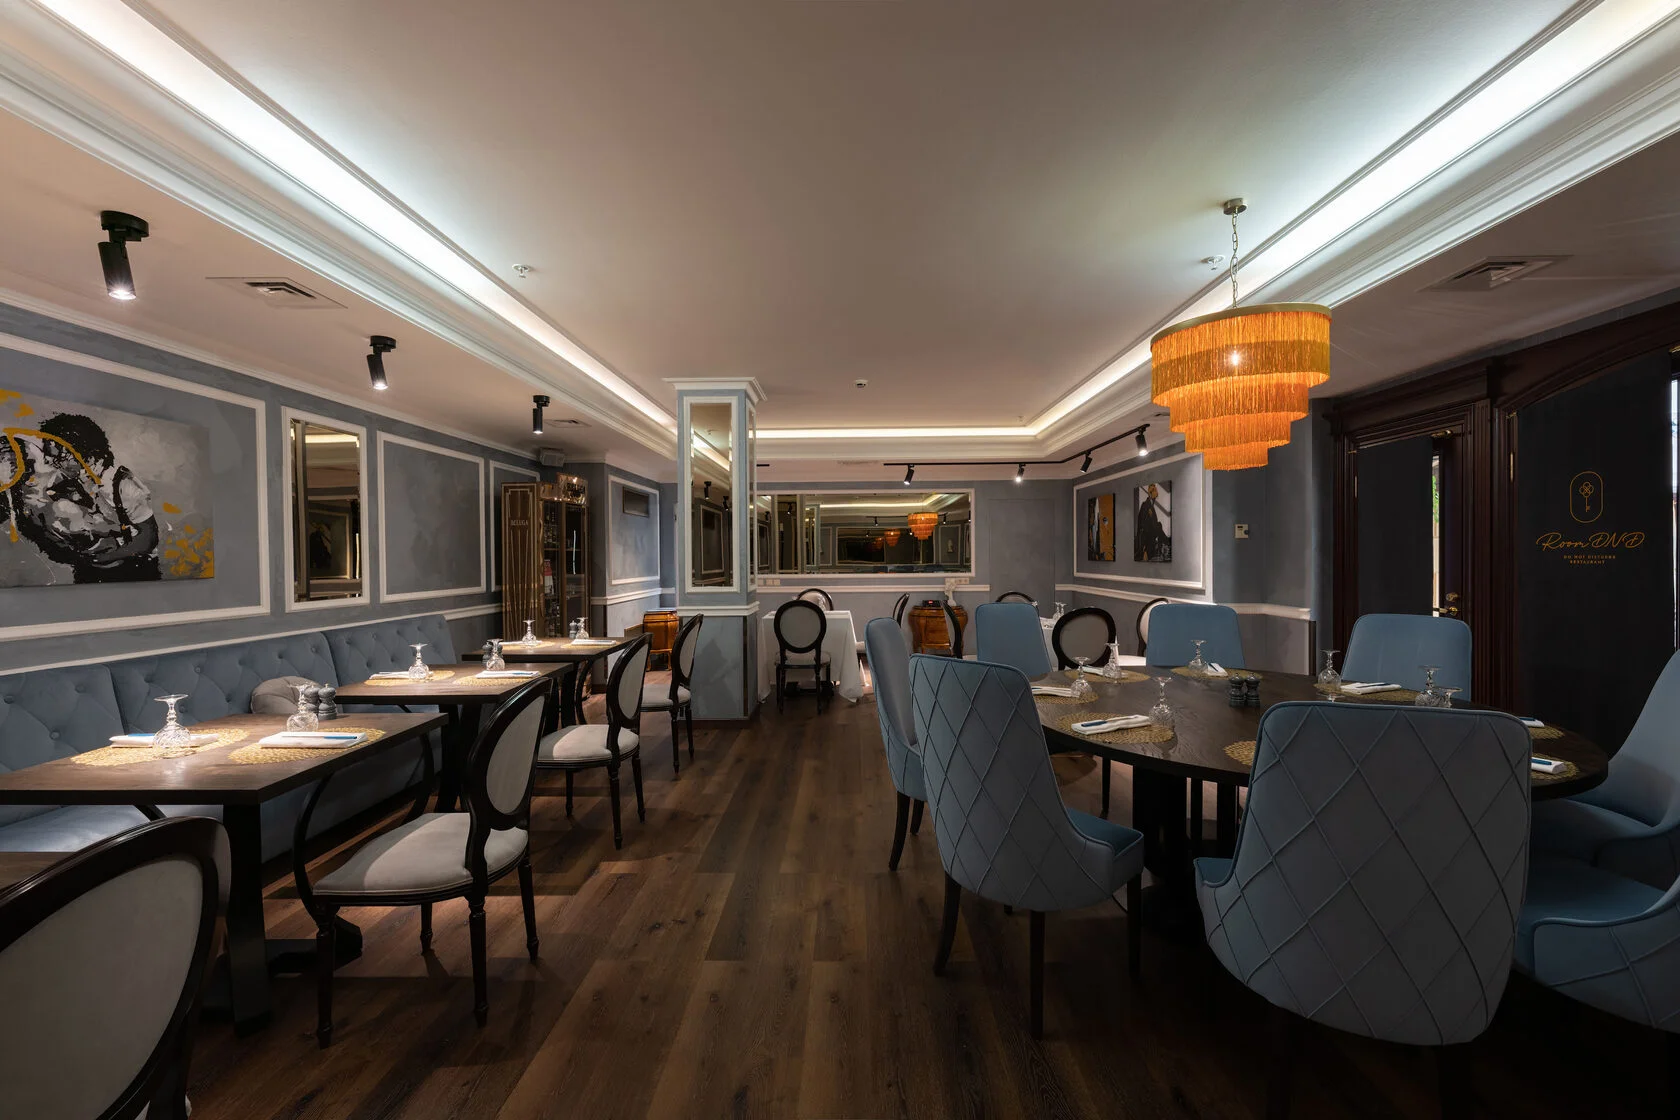 Ресторан современной японской кухни в концепции speakeasy, расположенный в отеле Grand Hotel Emerald. Название переводится как «Не беспокоить».